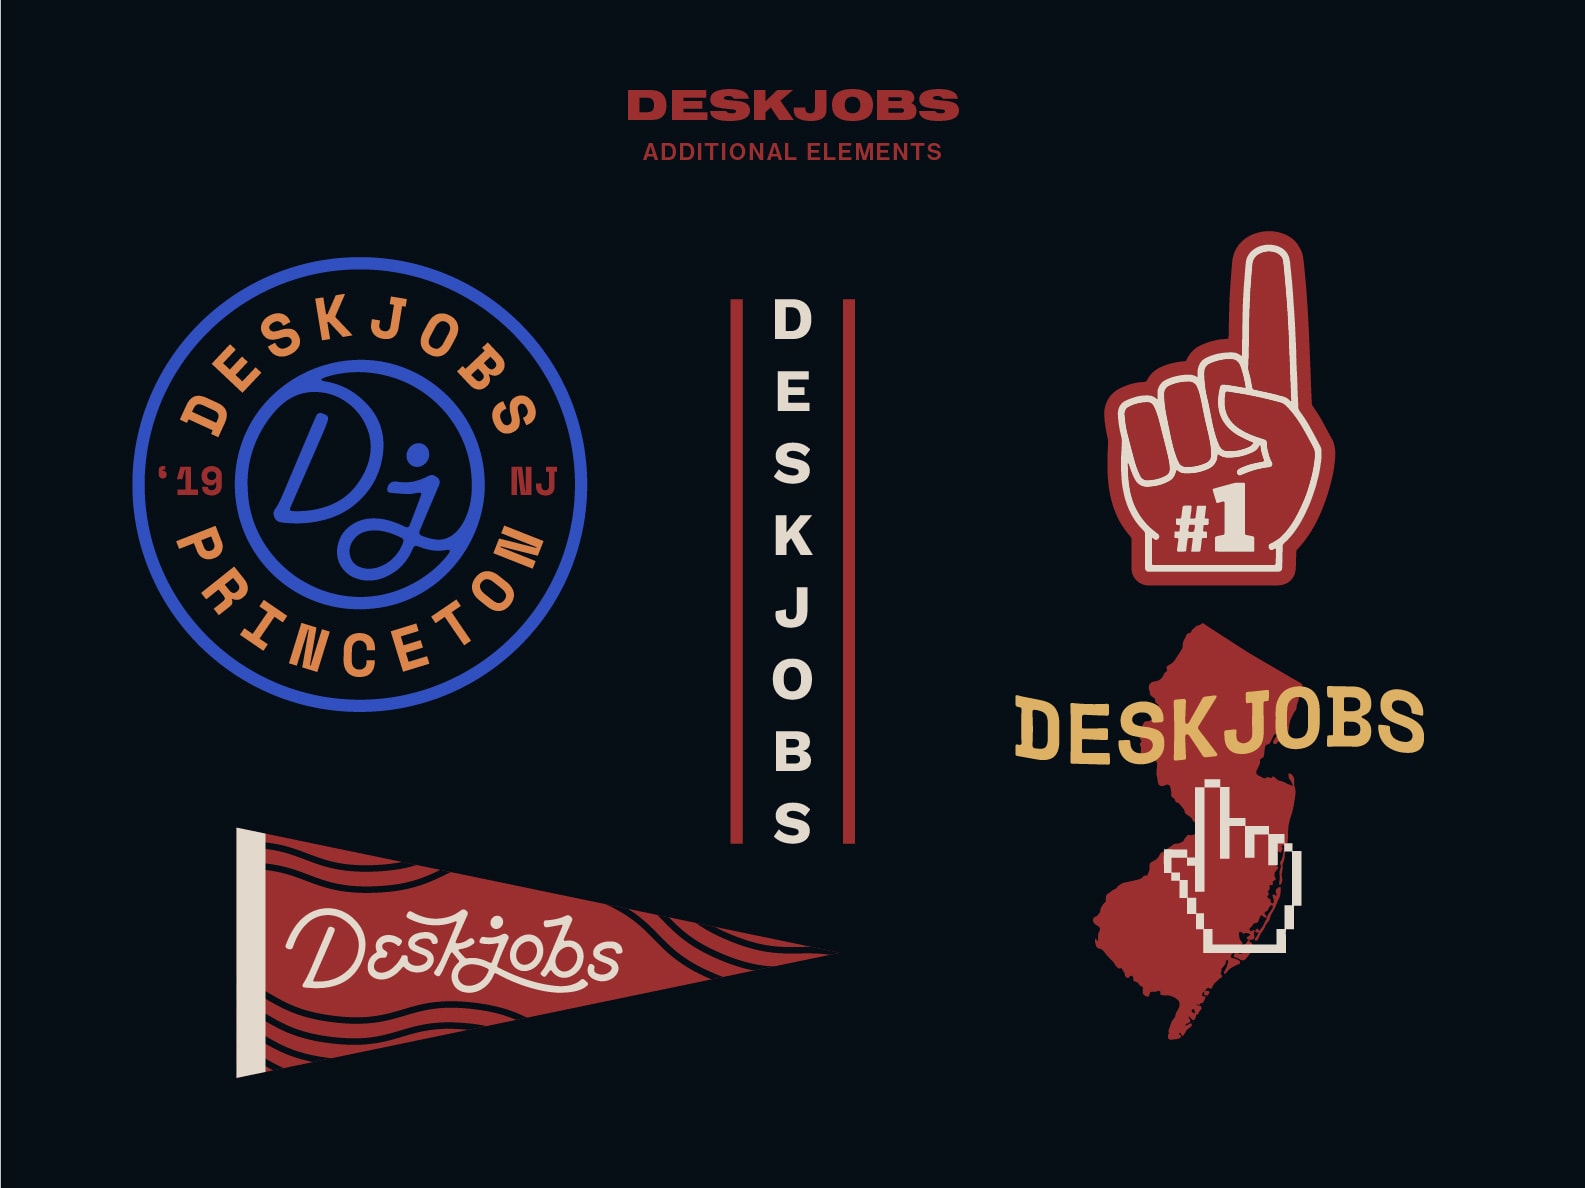 Deskjobs Brand Identity additional graphic elements